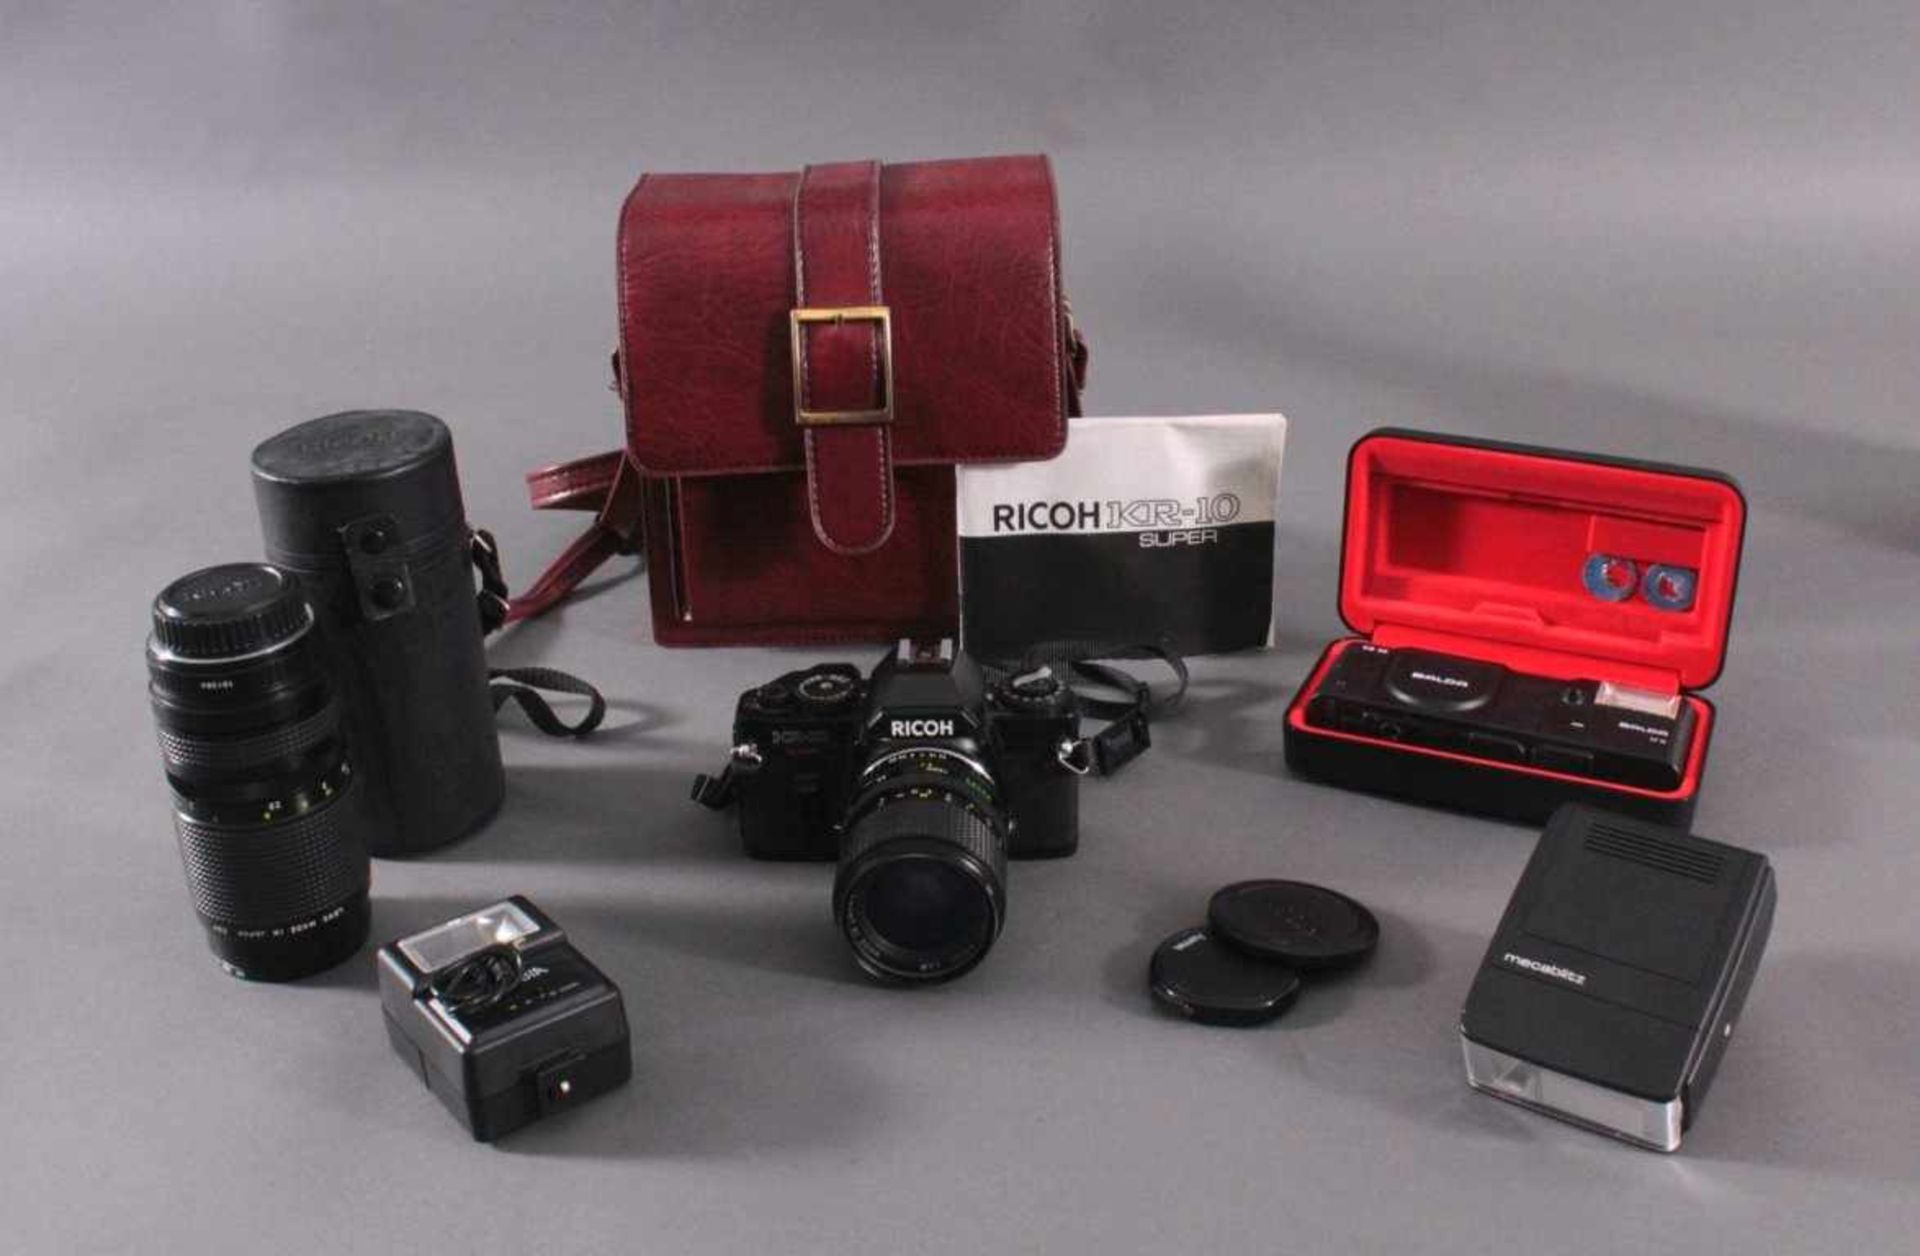 Richo XR-10 Fotoaparat mit Zubehör und Ledertsche1 Objektiv Richo C 1:3.5-4.5, 35-70 mm, Macro D-